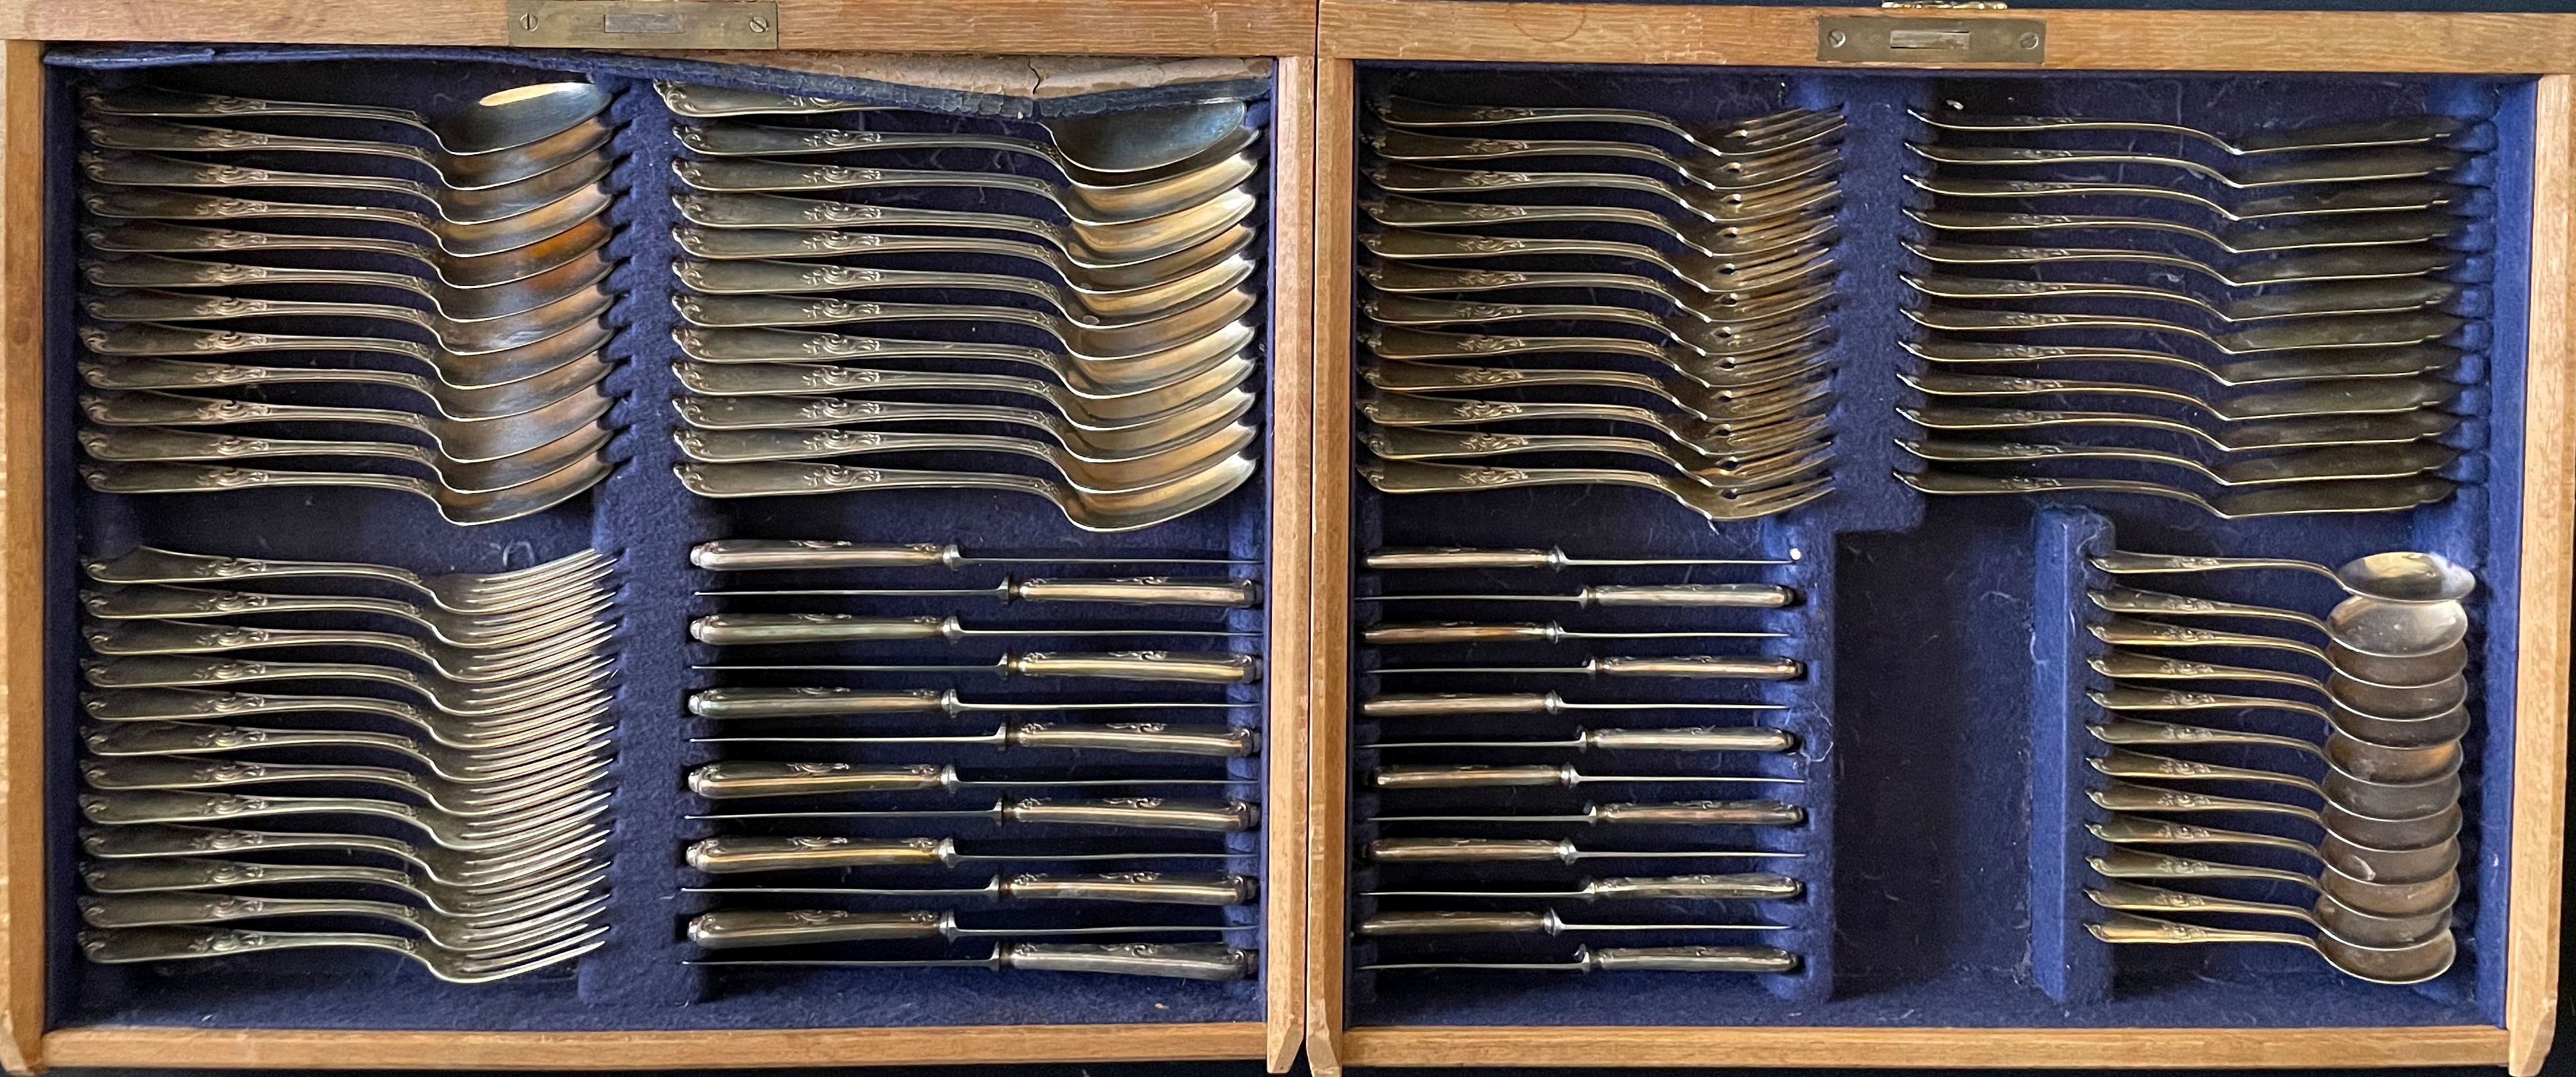 Silberbesteck für 12 Personen, Bruckmann, gepunzt, 800er Silber: große Messer, Gabeln und Löffel, - Image 8 of 8